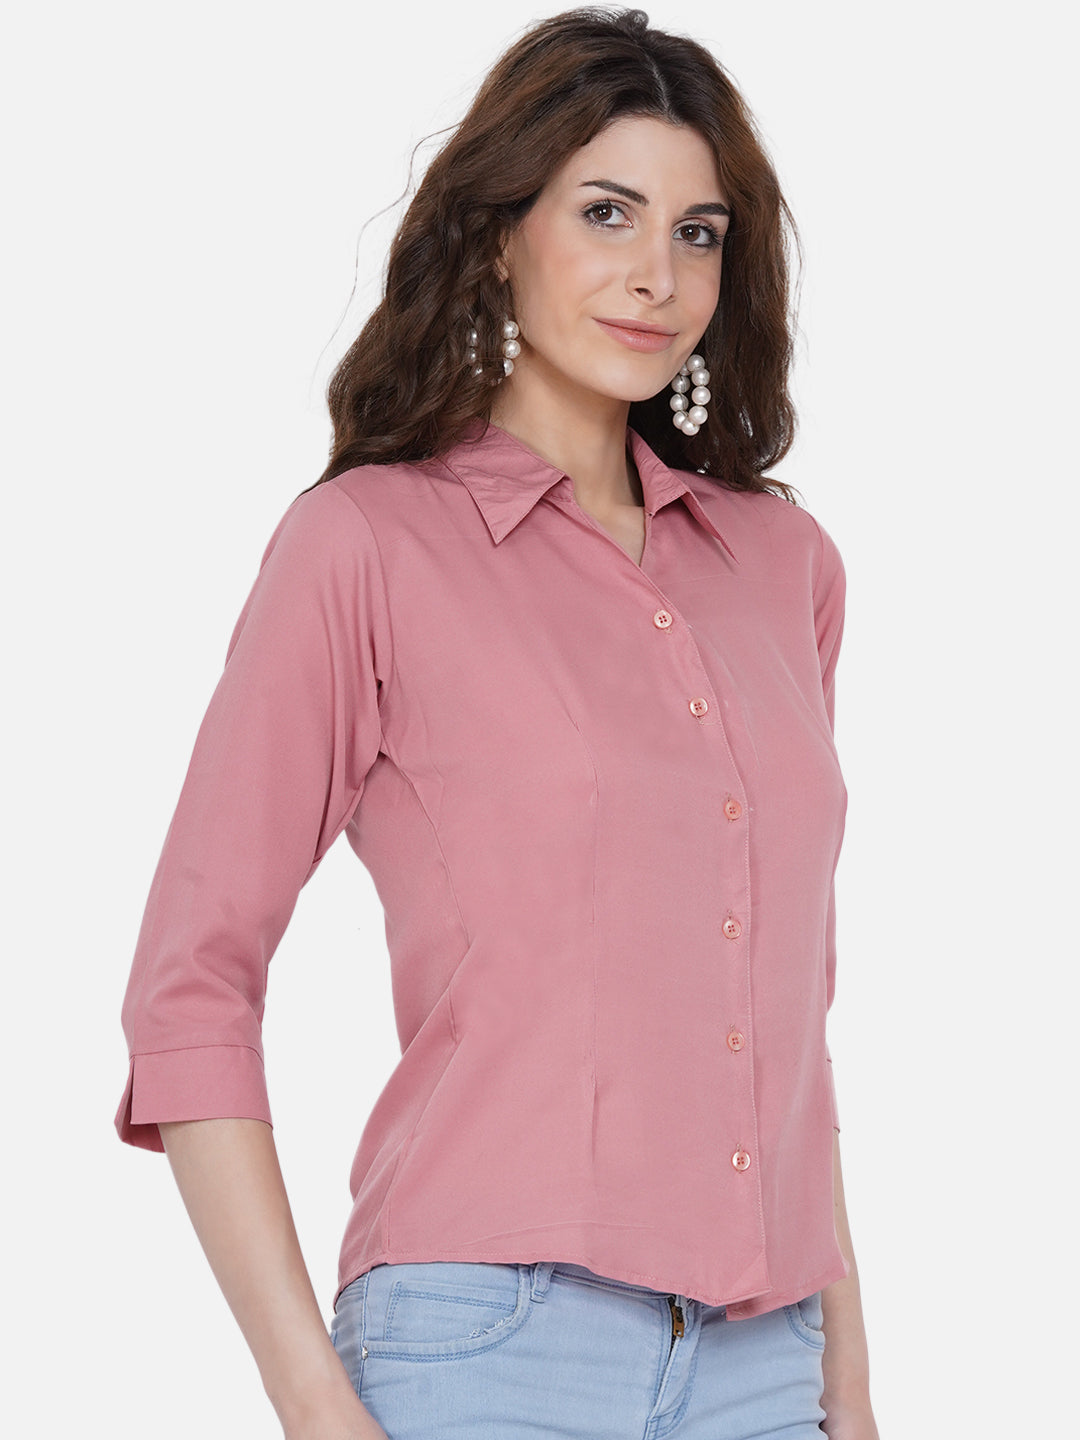 Women's Peach-Coloured Casual Shirt - Wahe-Noor